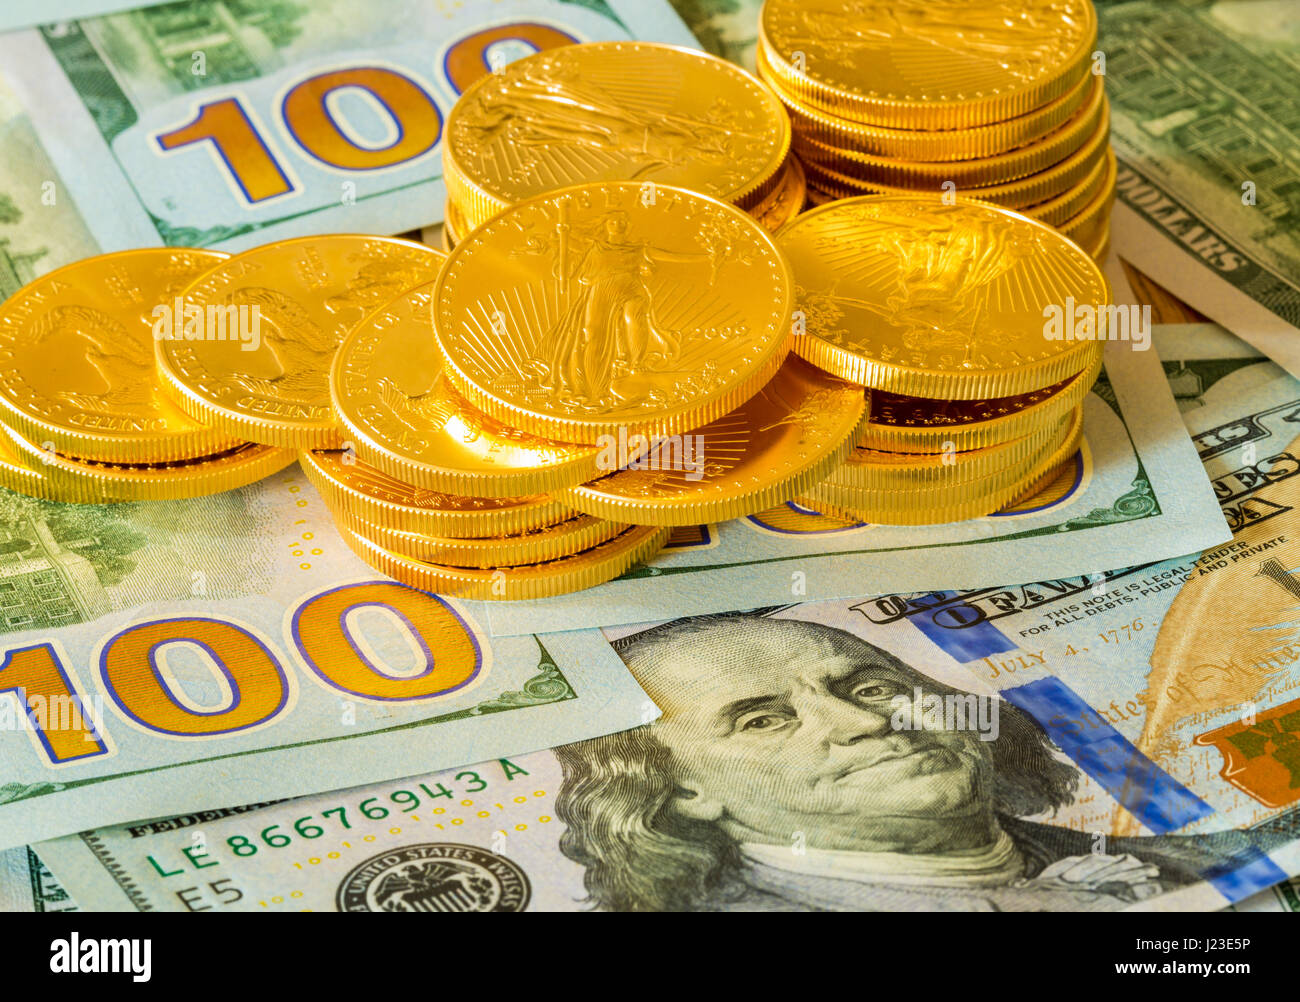 Stapel von American Gold Eagle Gold Bullion Coins auf Neues Design der US-Währung 100 Dollar-Scheine Stockfoto